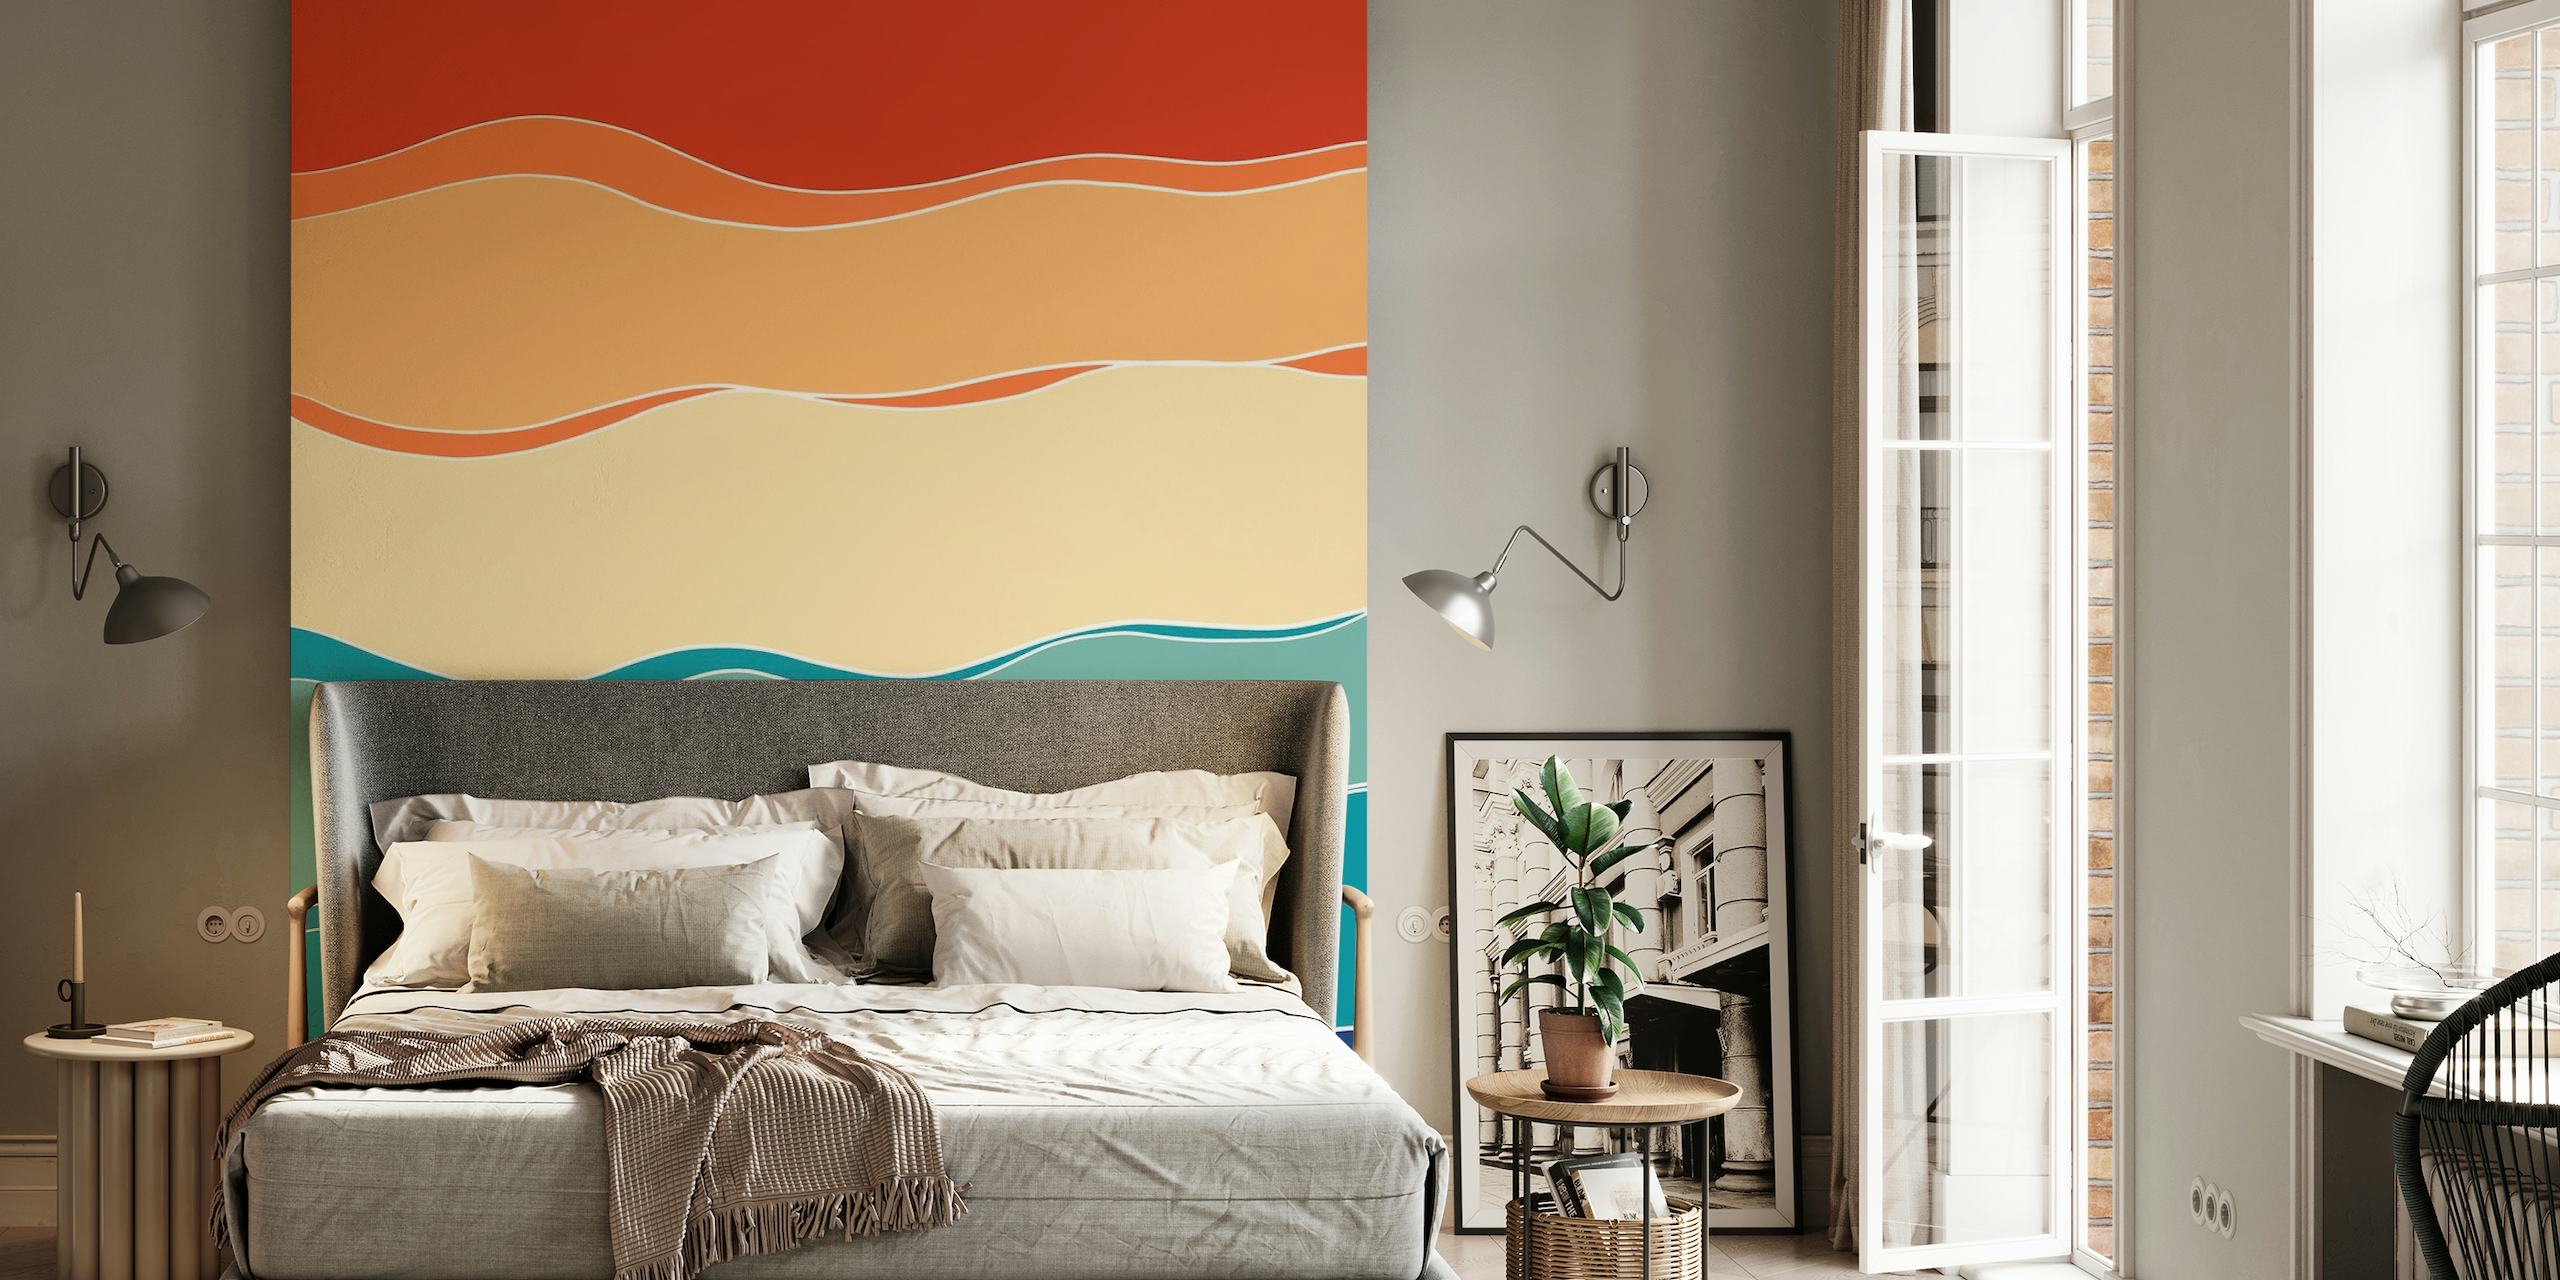 Apstraktni retro ljetni oceanski valovi zidni mural s gradijentnim prugama u toplim i hladnim bojama